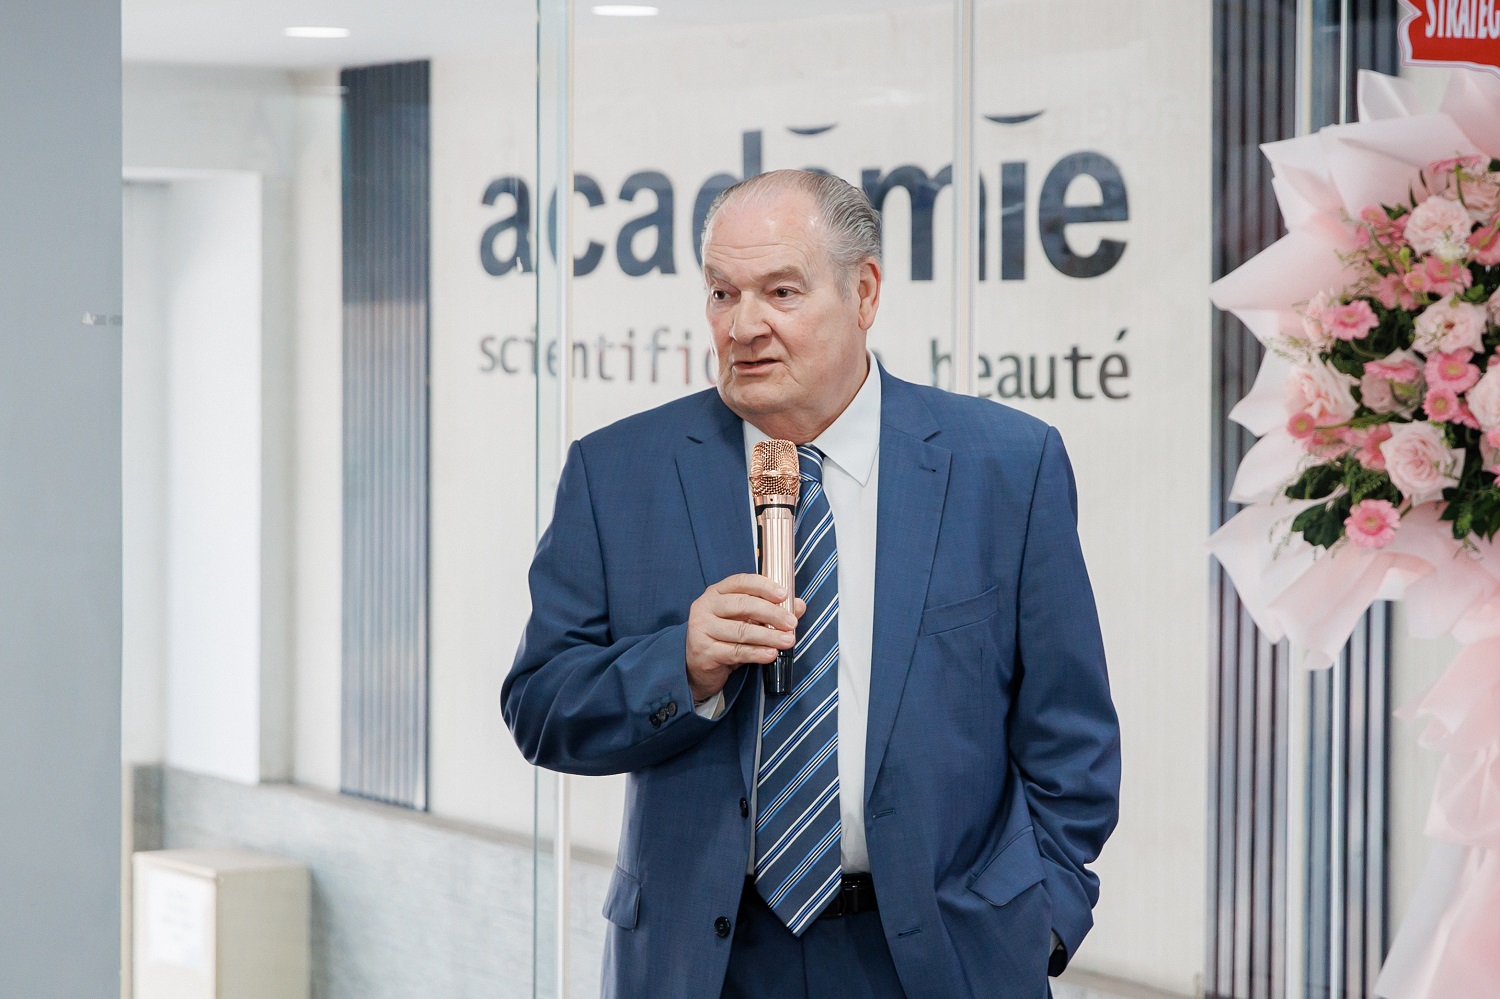 Mr. Christophe Theme – Chủ tịch tập đoàn Academie group phát biểu tại buổi lễ 